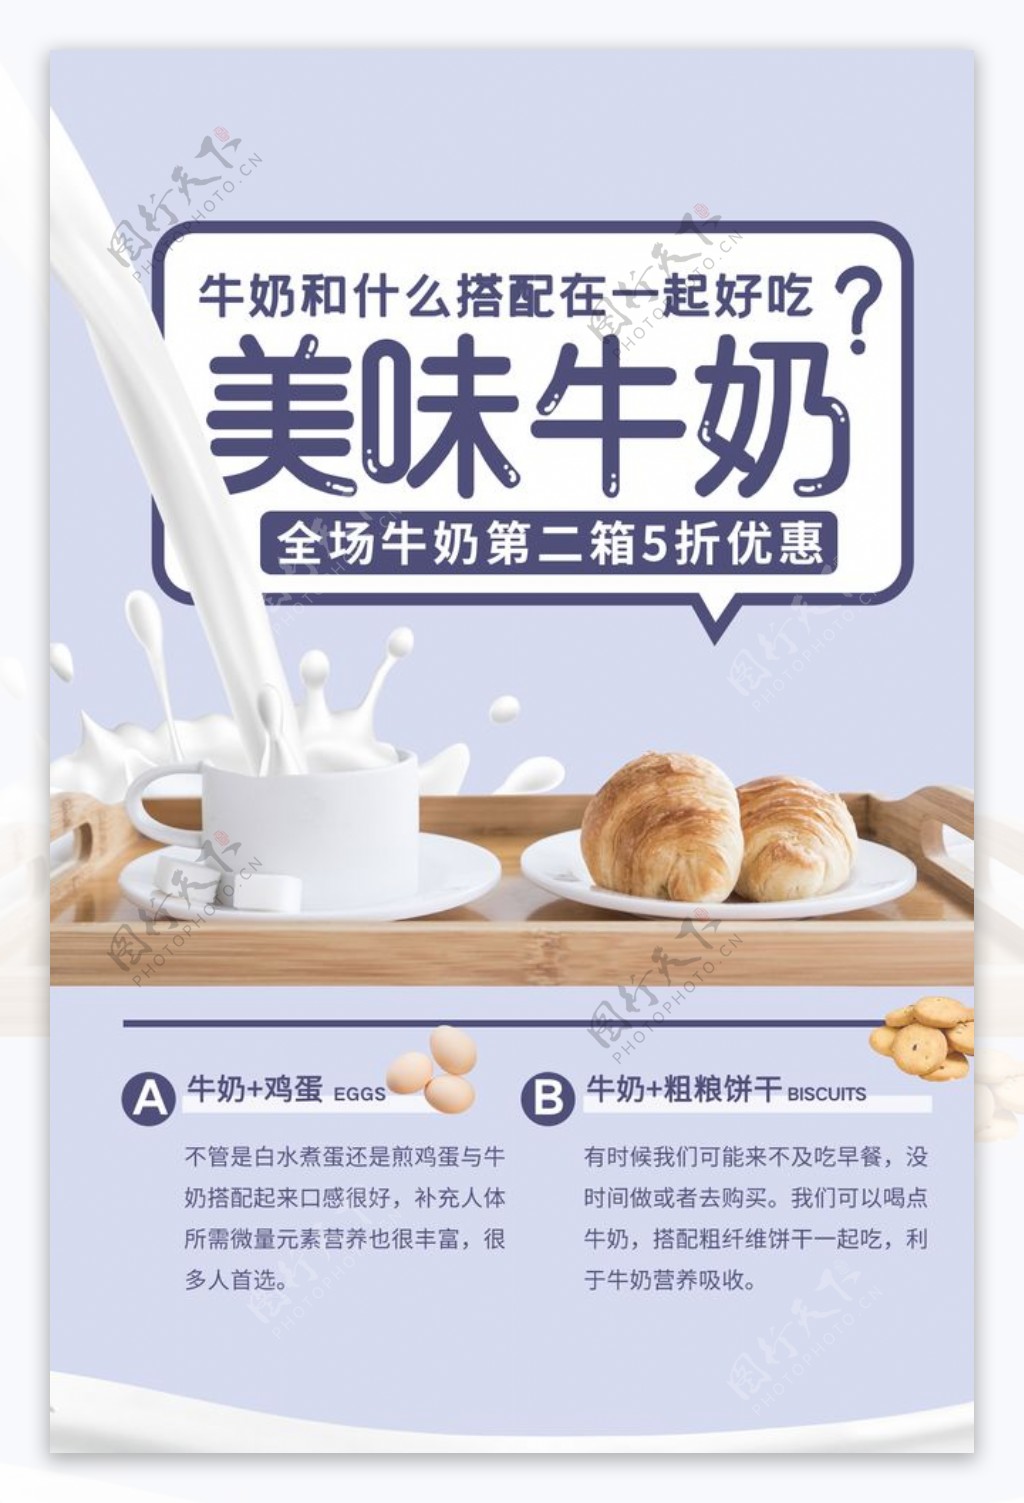 美味牛奶营养活动海报素材图片